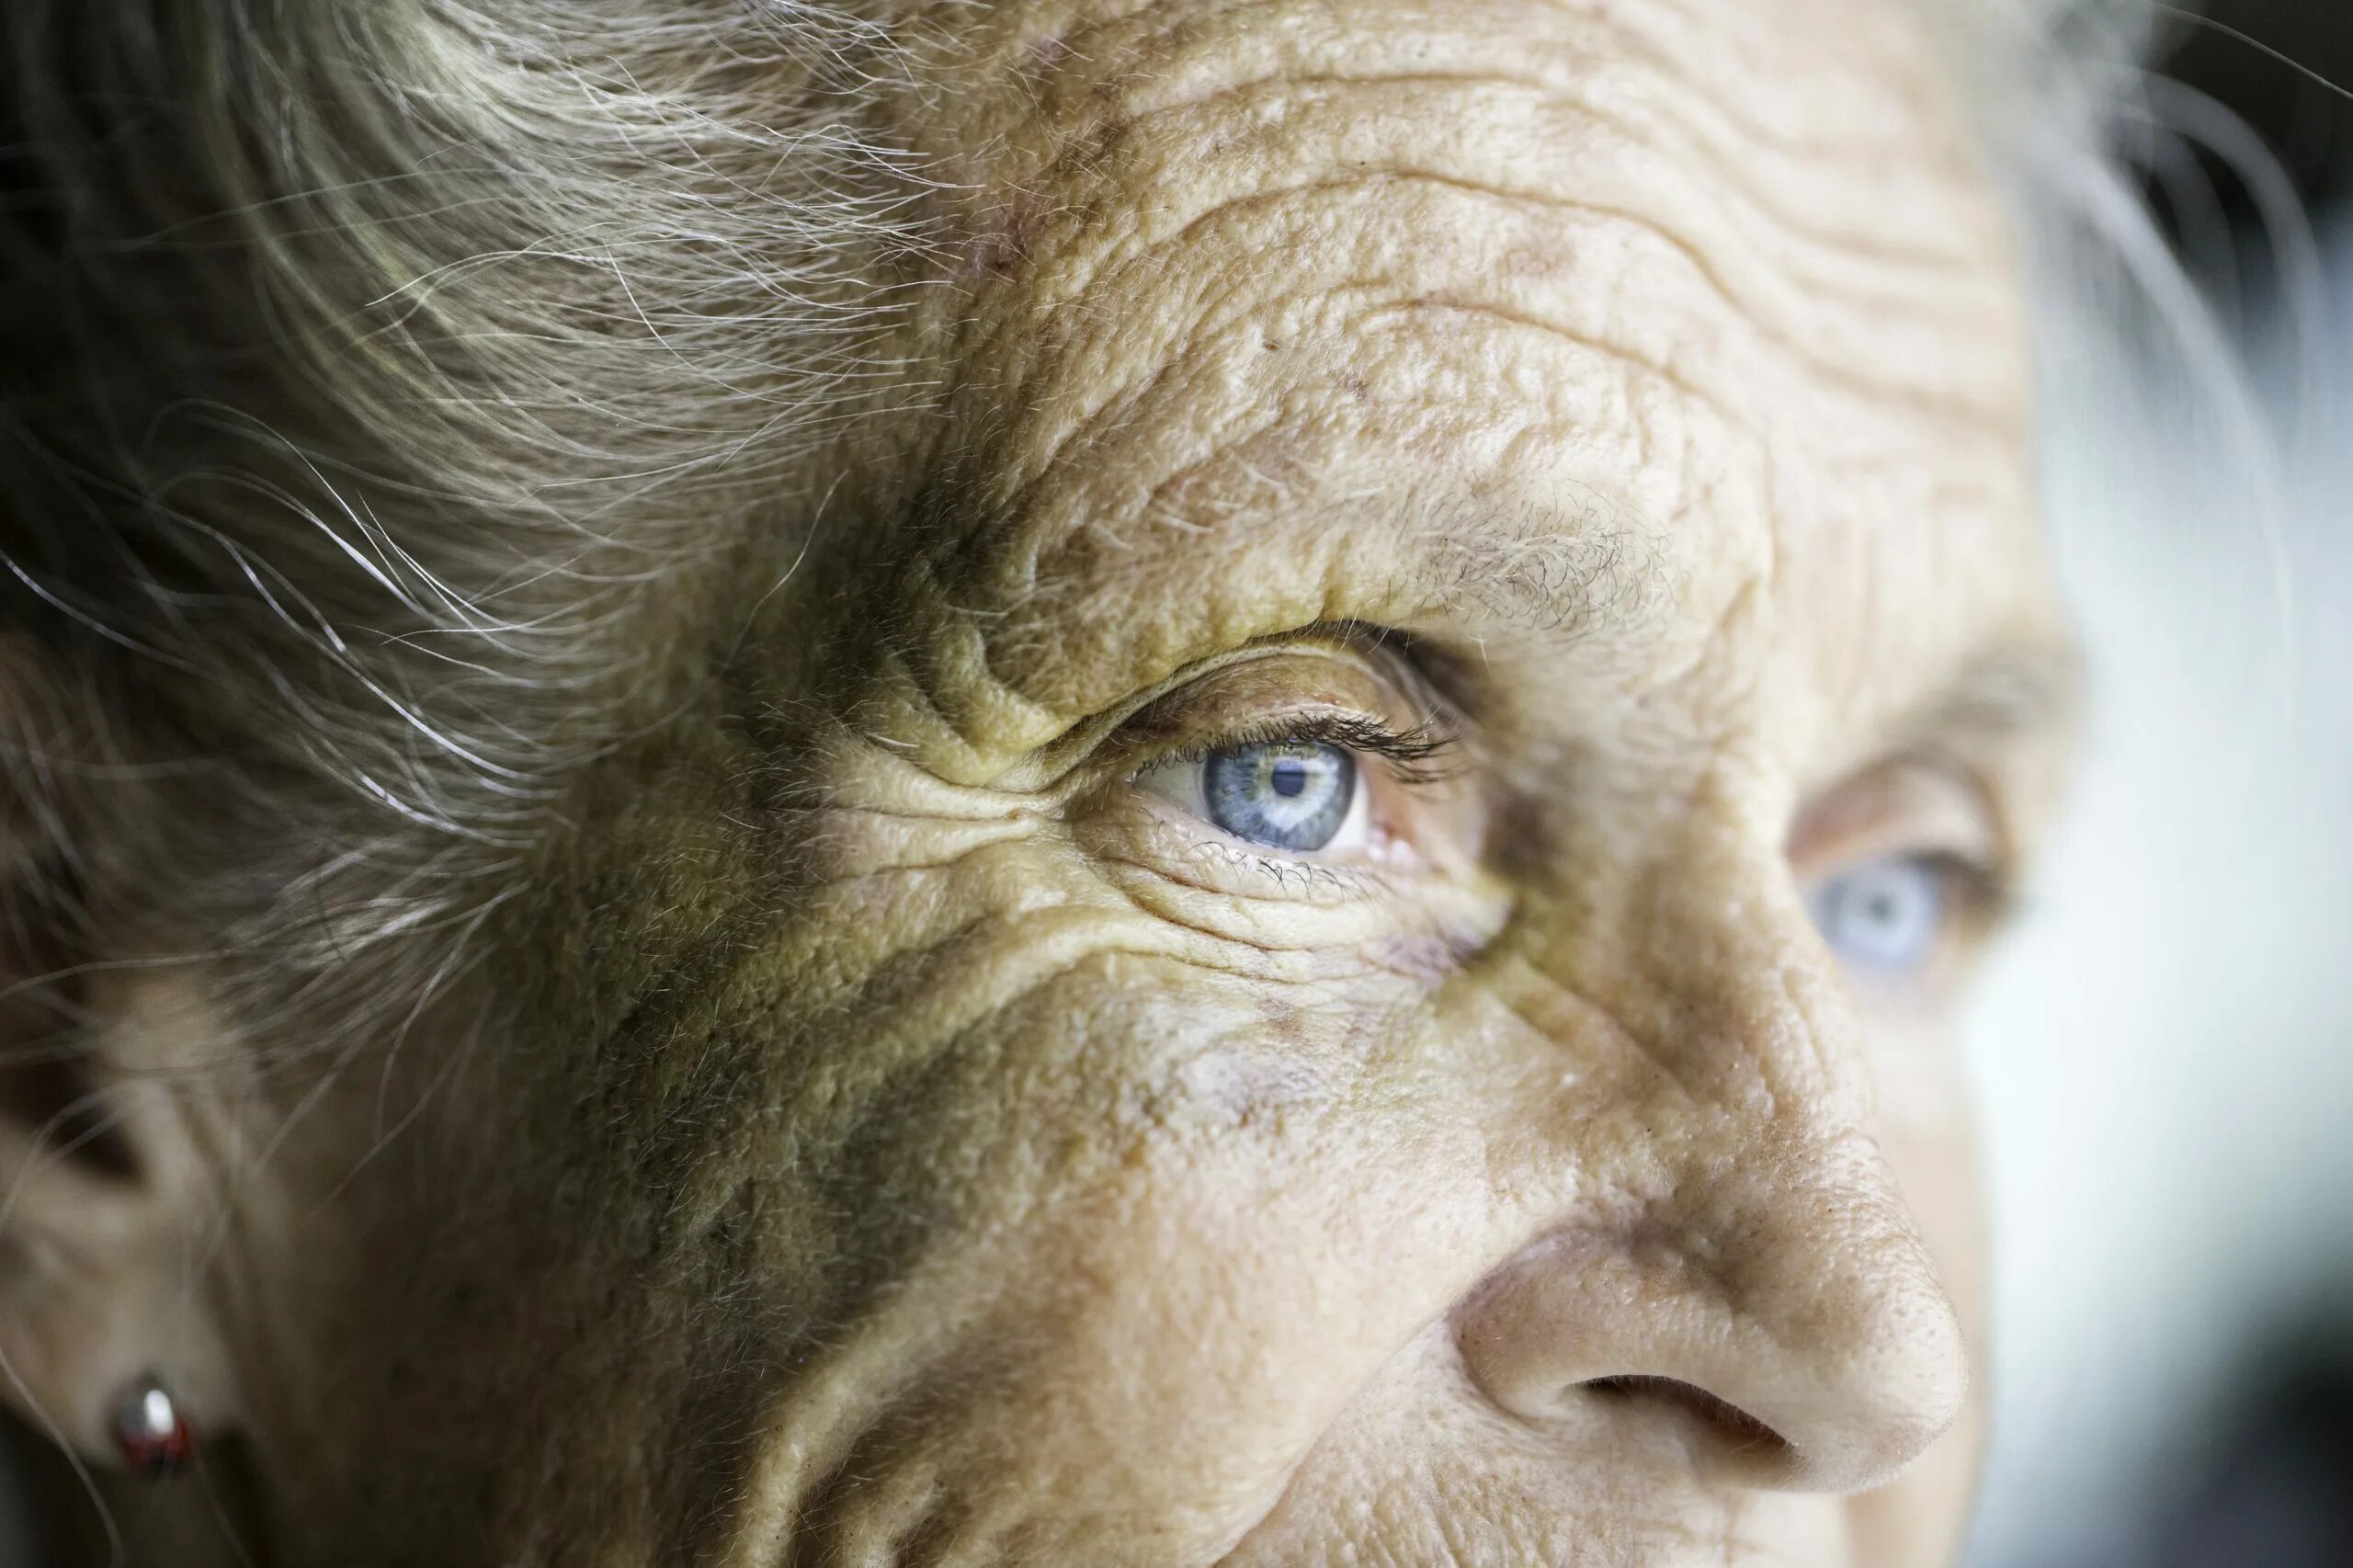 Еще вовсе человек не пожилой. Глаза пожилого человека. Старая кожа человека. Взгляд пожилого человека.